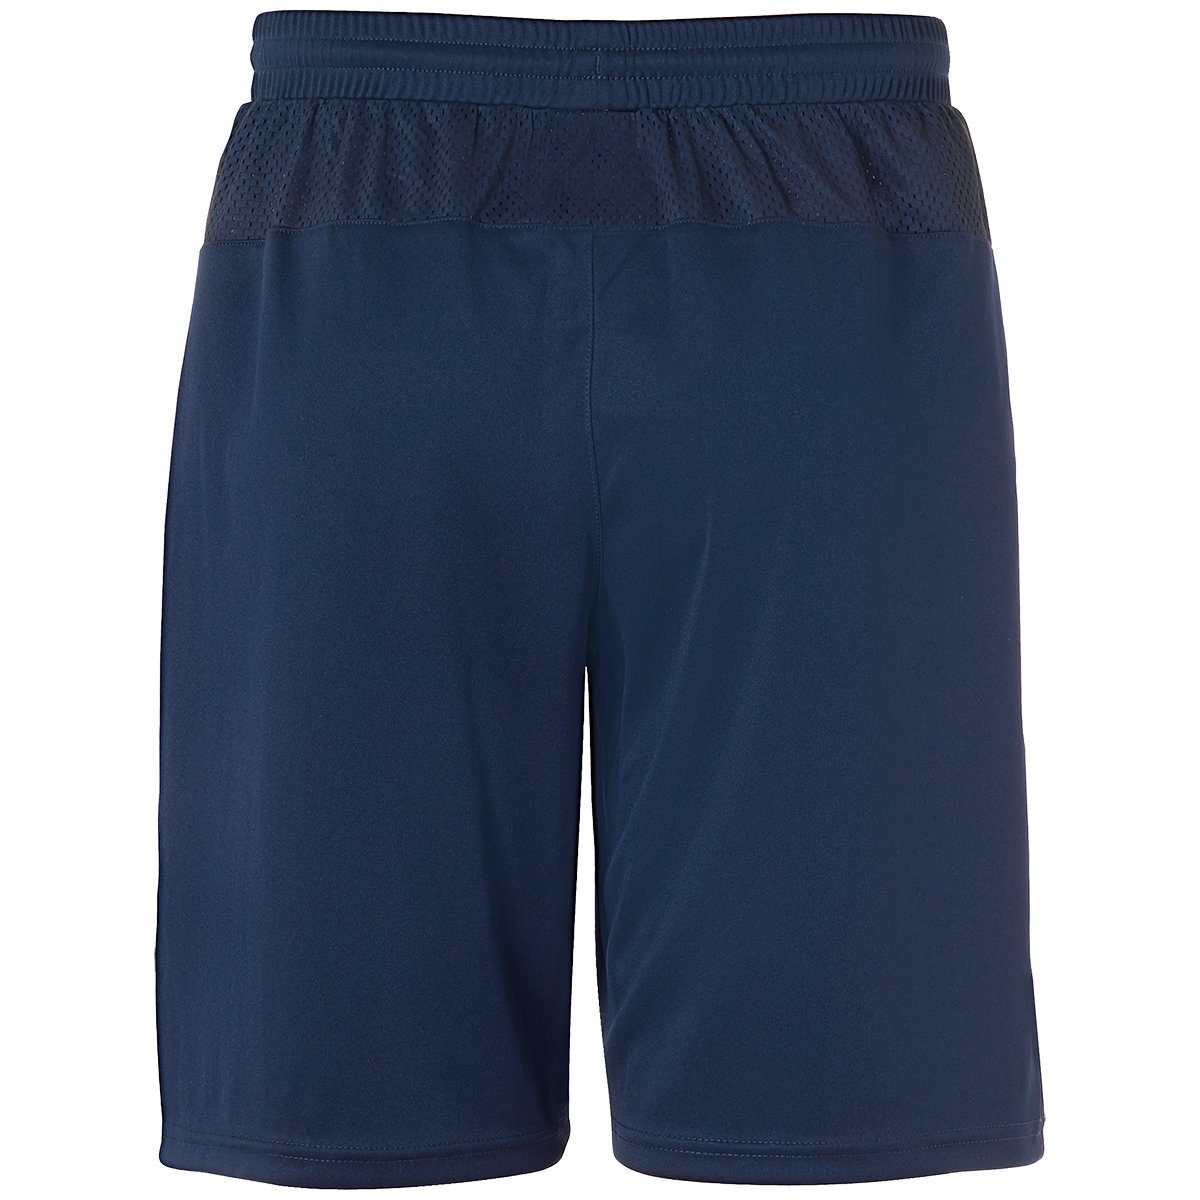 uhlsport marine uhlsport SHORTS Shorts PERFORMANCE Shorts